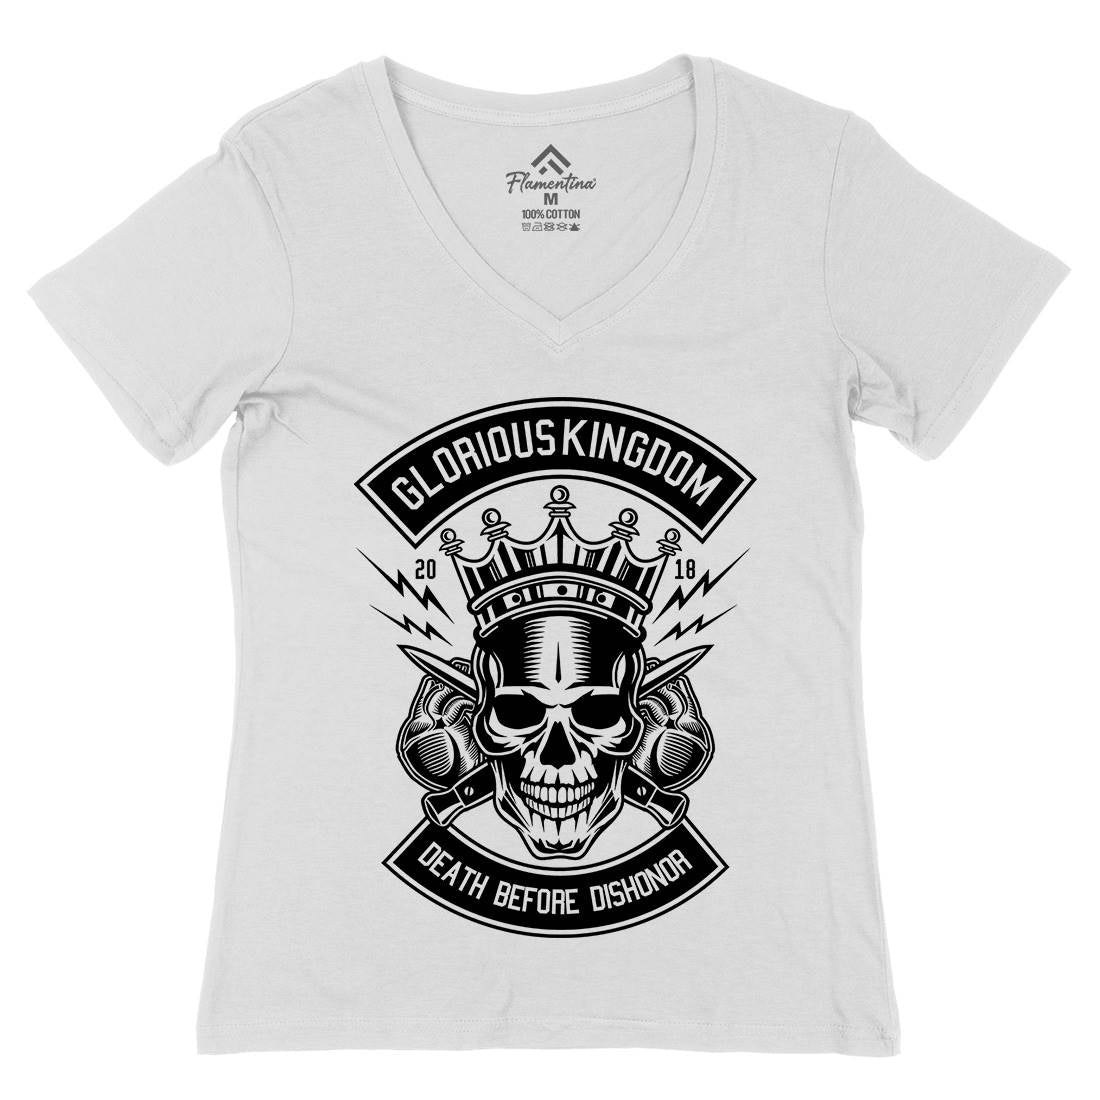 Glorious Kingdom Womens Organic V-Neck T-Shirt Retro B546